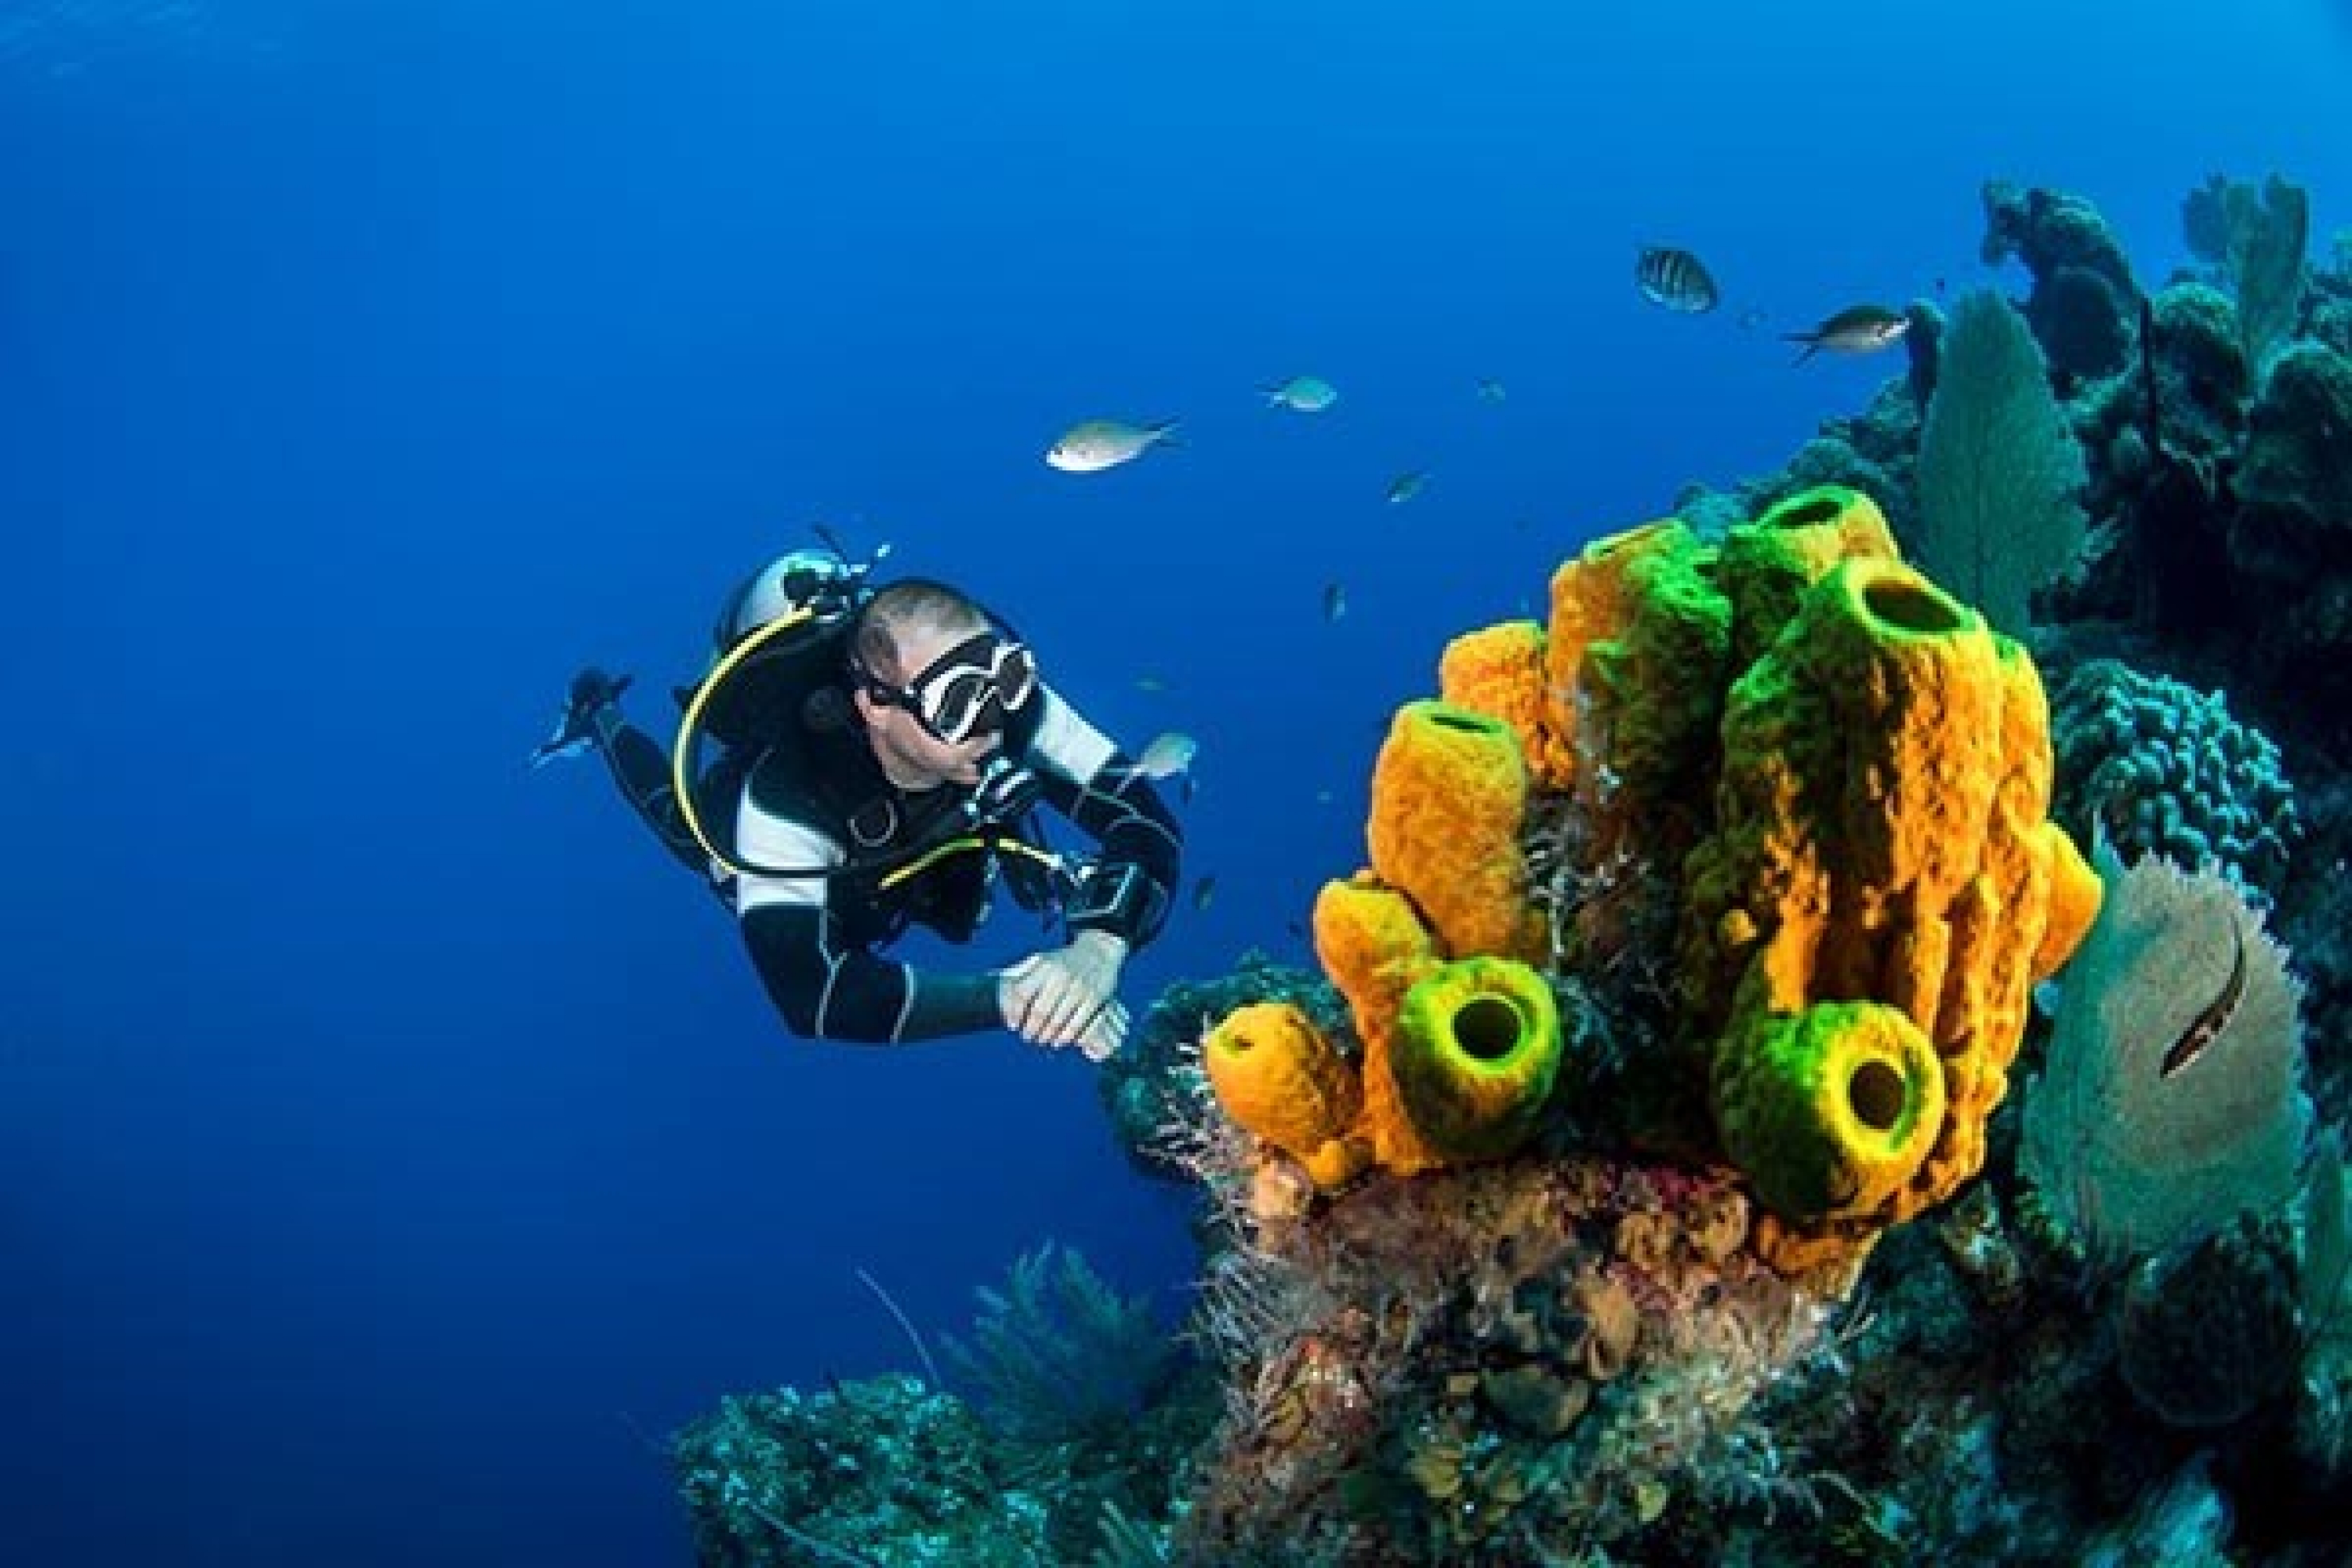 Ein Taucher betrachtet unter Wasser ein schönes Korallenriff. Ab wann spricht man von einem Wagnis?